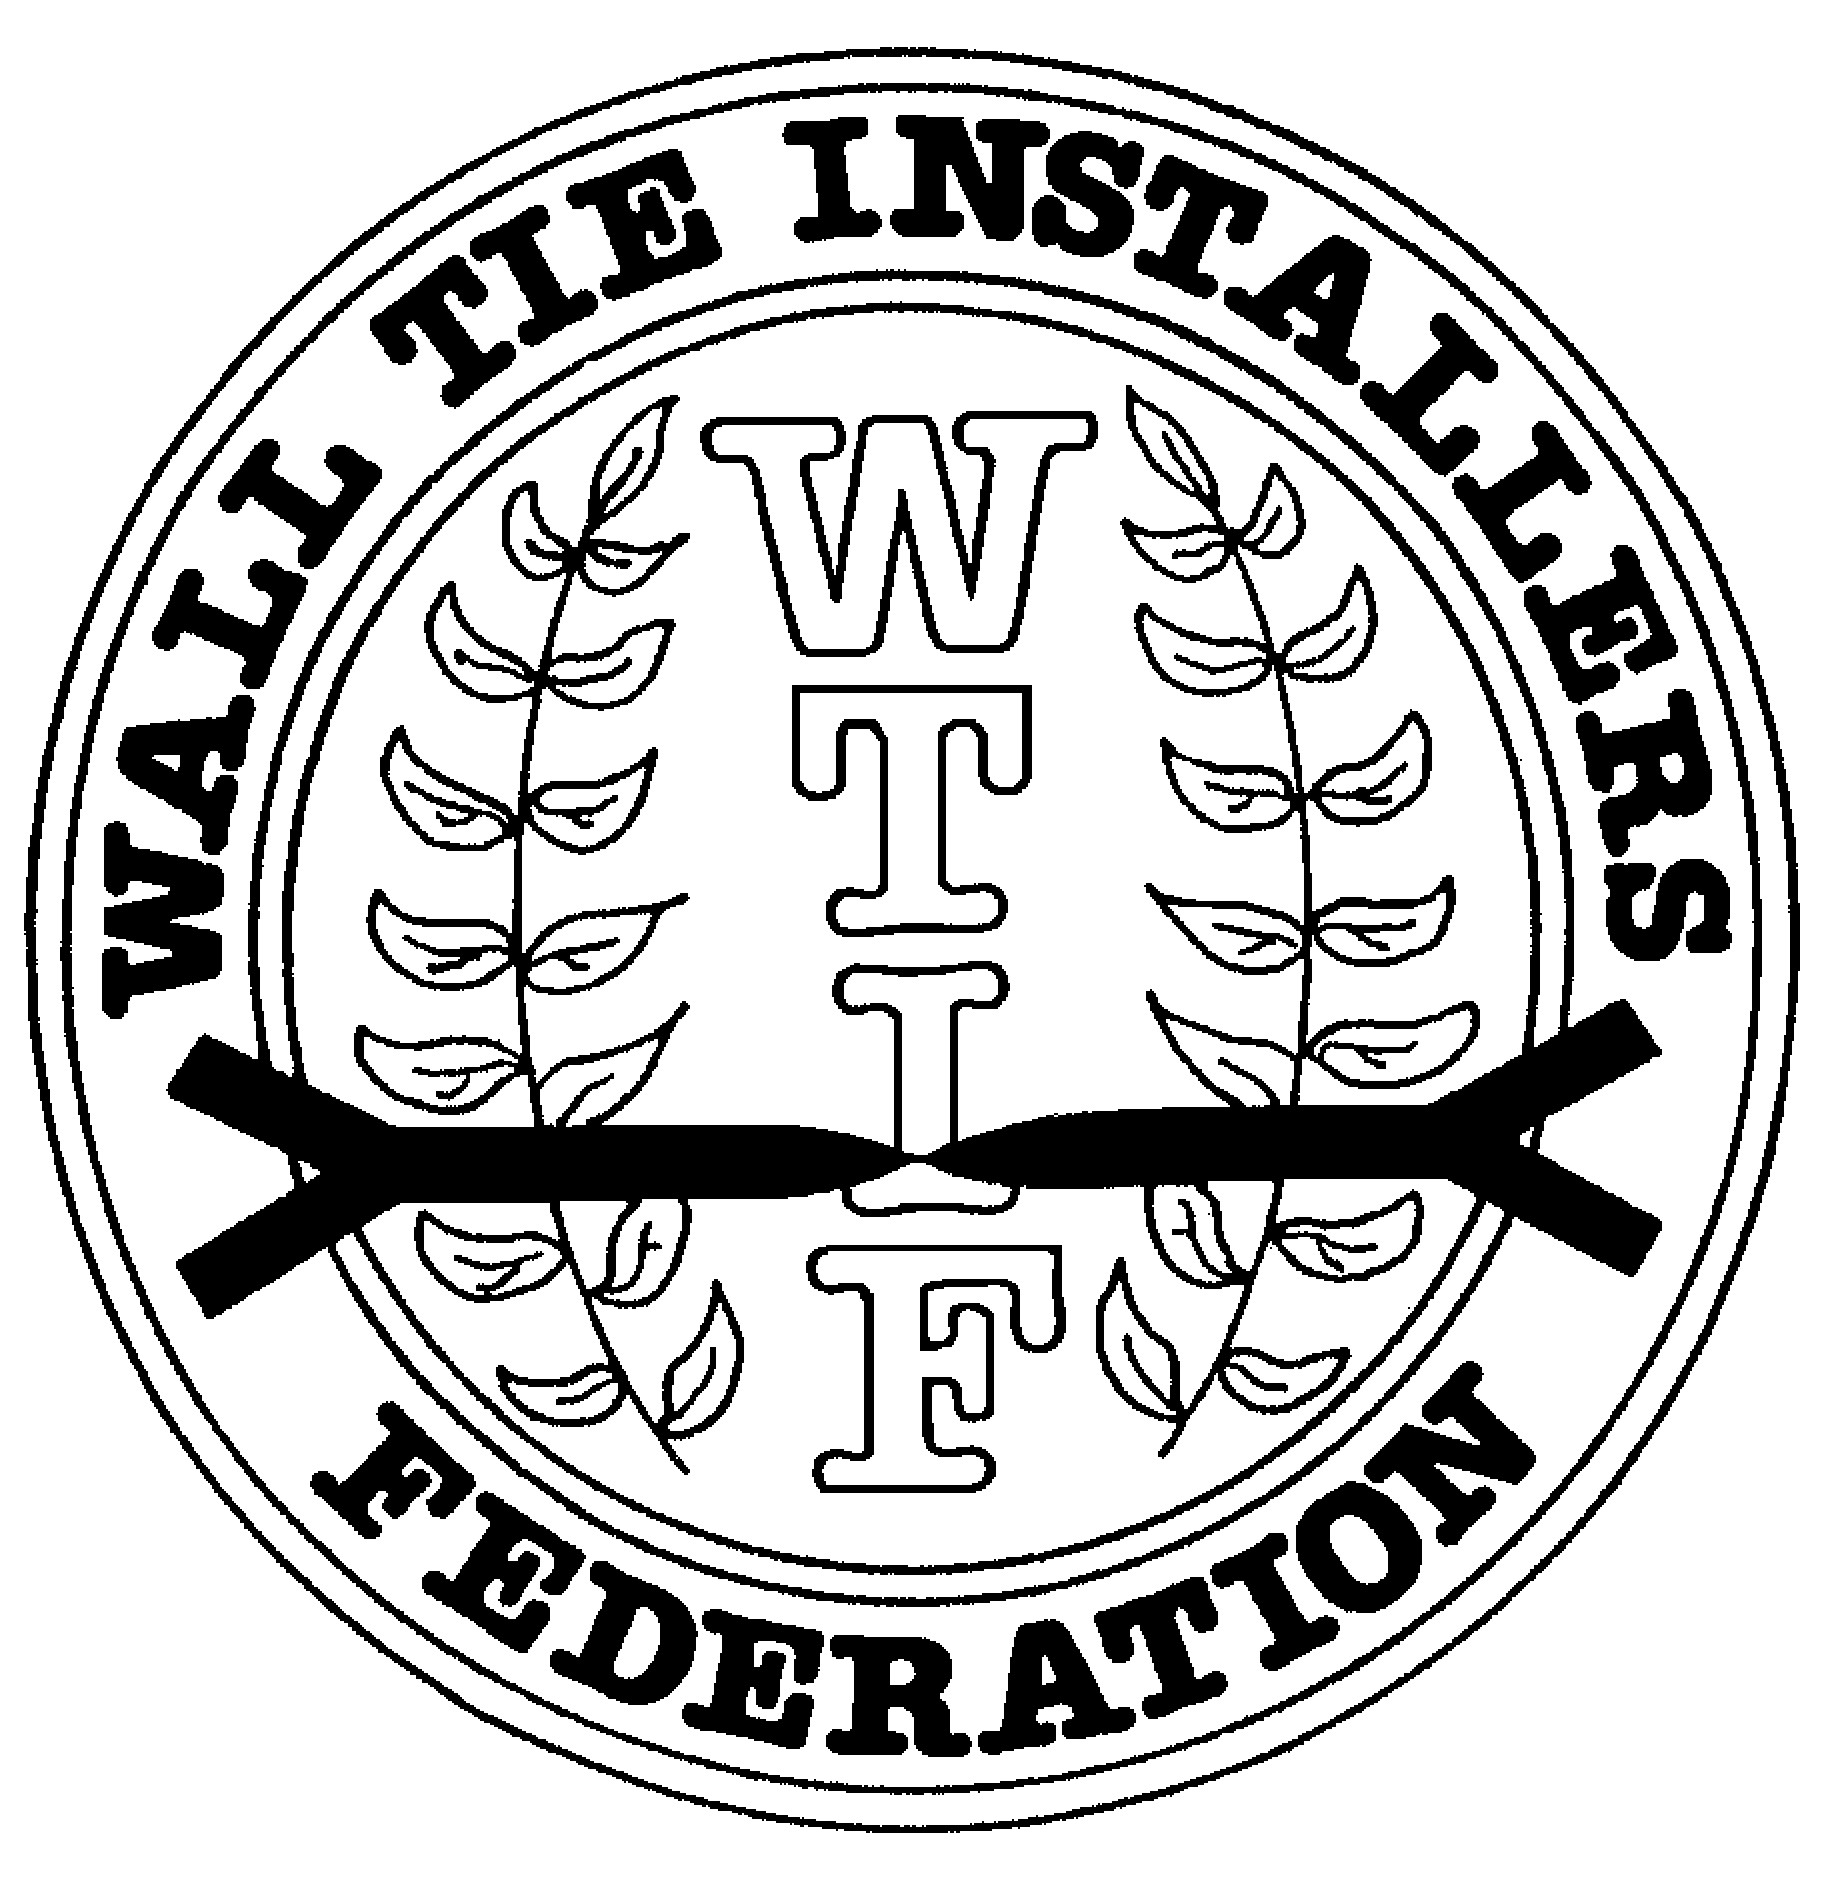 Full members of the WTIF